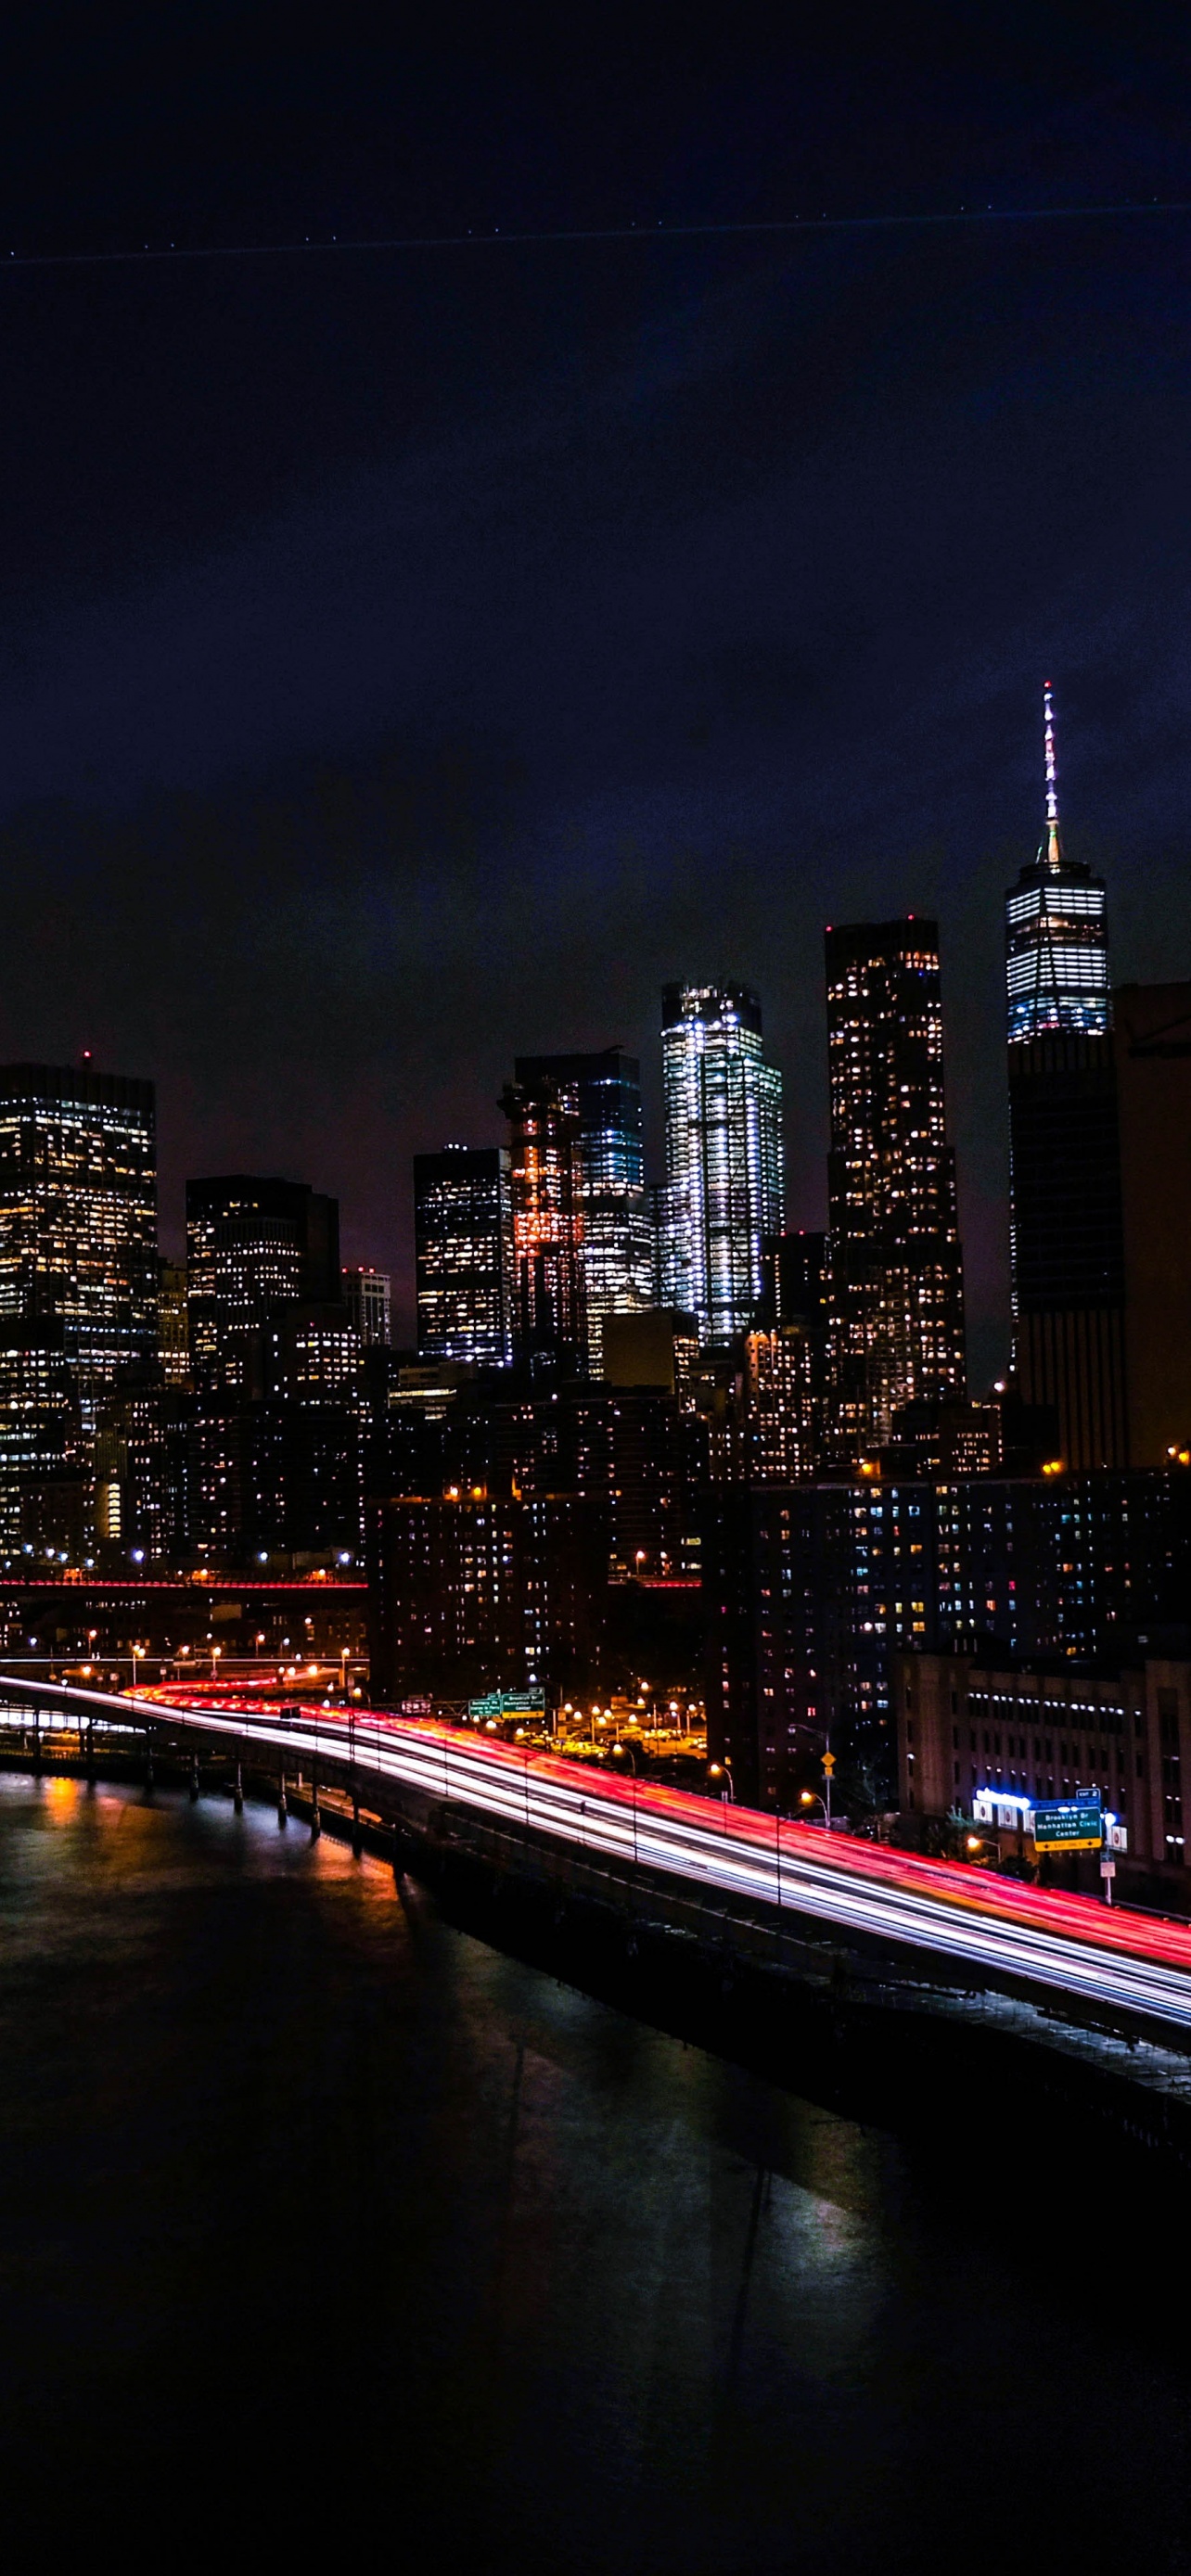 Hãy cùng ngắm nhìn vẻ đẹp rực rỡ của thành phố New York trong đêm khuya, khi những đèn neon sáng chói phản chiếu trên dòng sông Hudson. Bức ảnh đầy lãng mạn này sẽ khiến bạn phải ngất ngây và mong muốn được một lần đặt chân đến đây thử cảm giác thật sự.